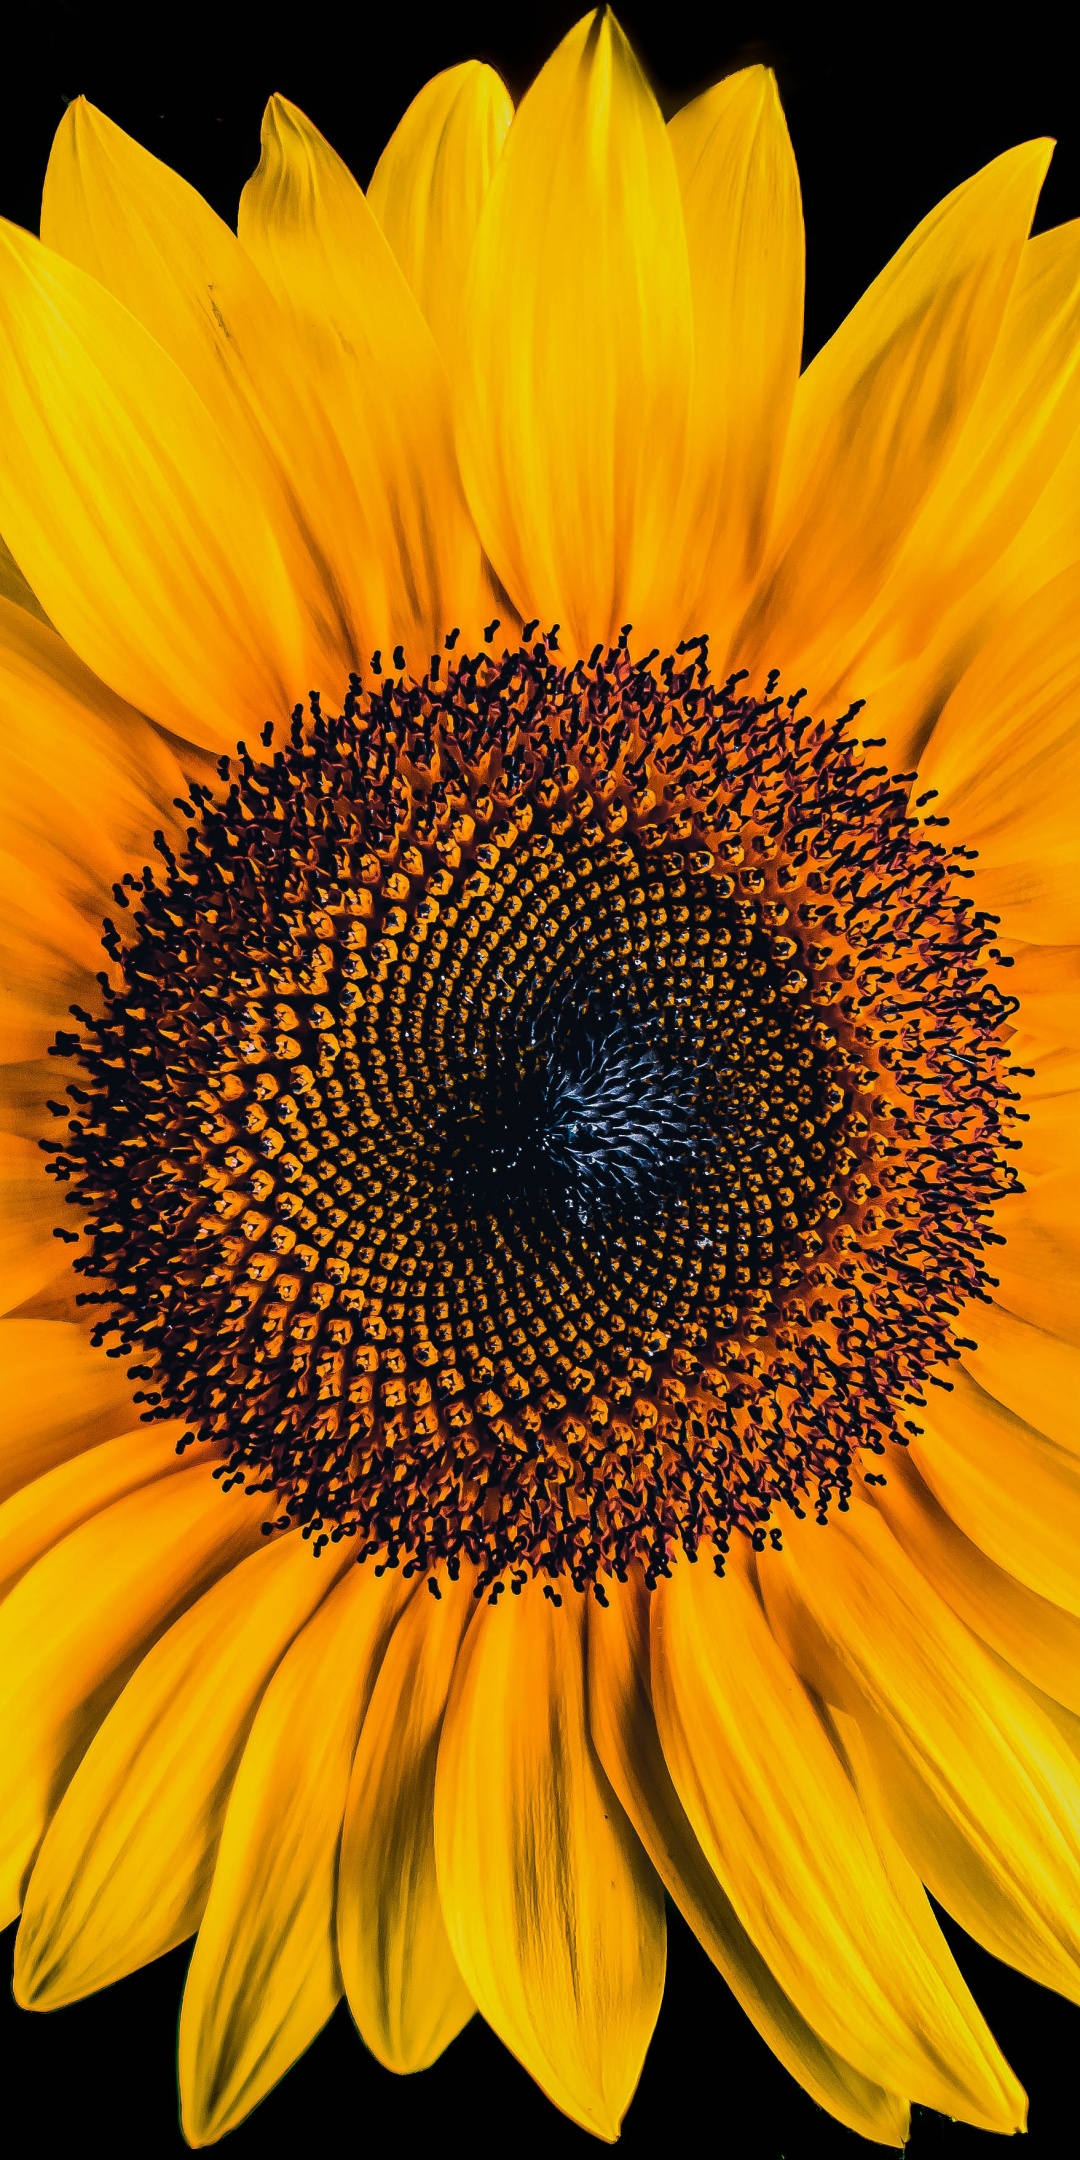 All Black Sunflower Wallpaper : Sunflower Full HD Wallpaper and